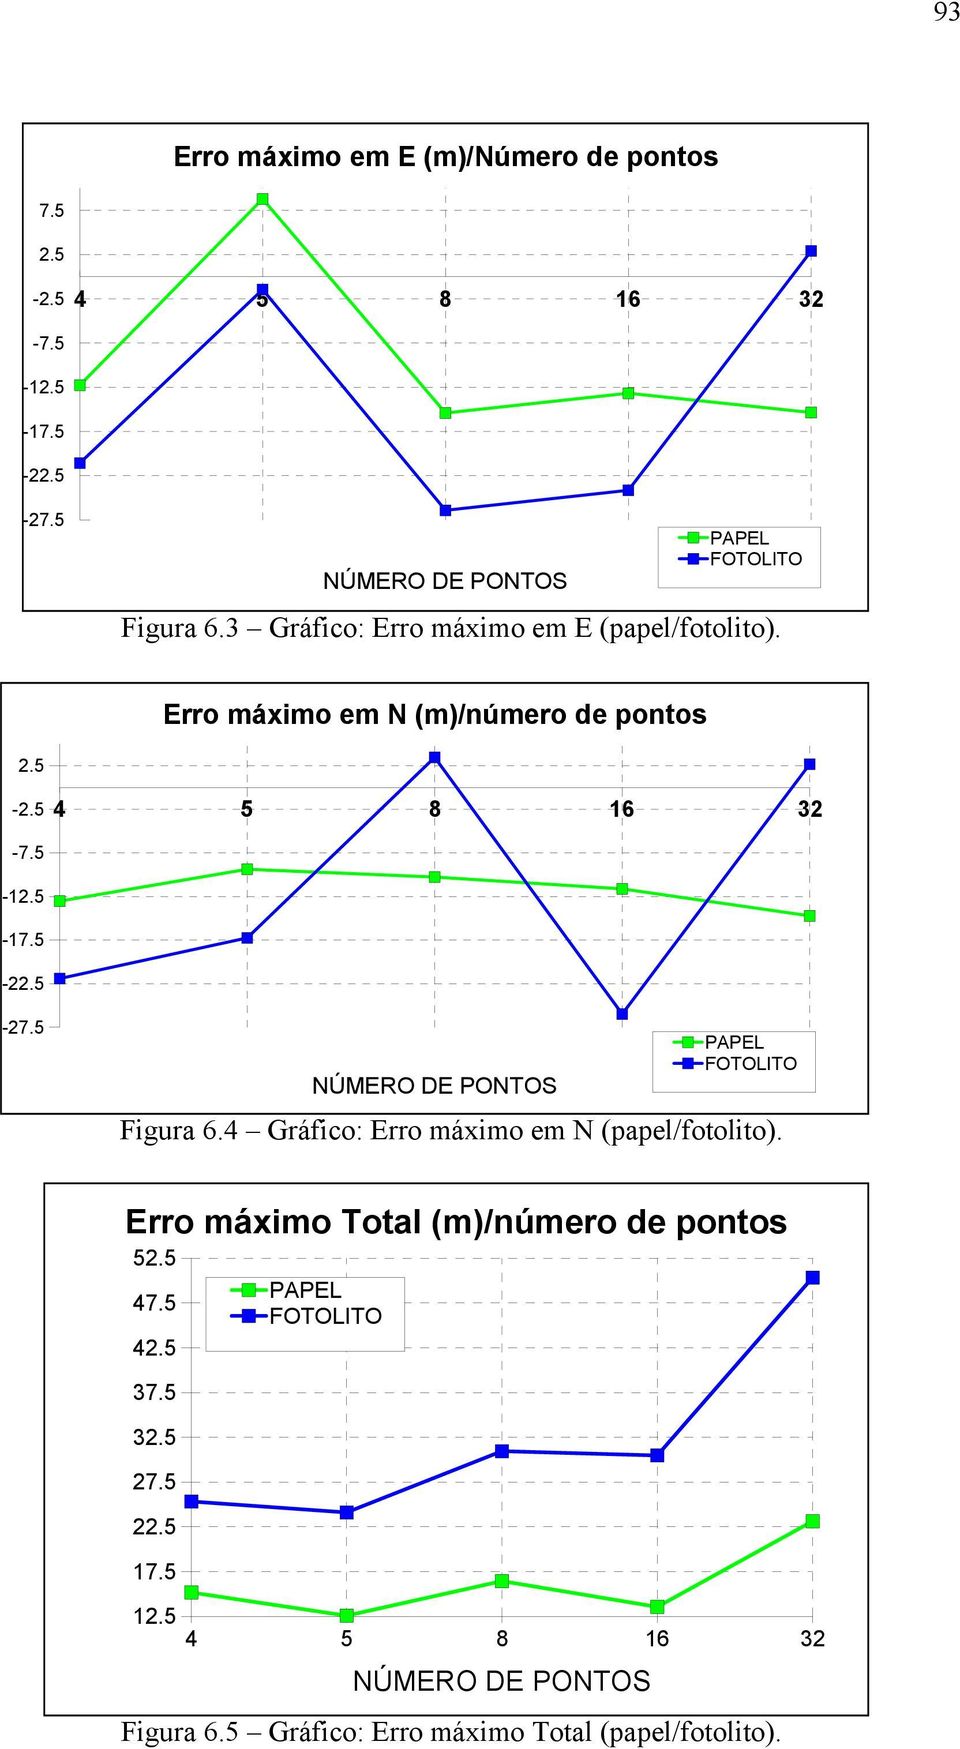 5 NÚMERO DE PONTOS PAPEL FOTOLITO Figura 6.4 Gráfico: Erro máximo em N (papel/fotolito). Erro máximo Total (m)/número de pontos 52.